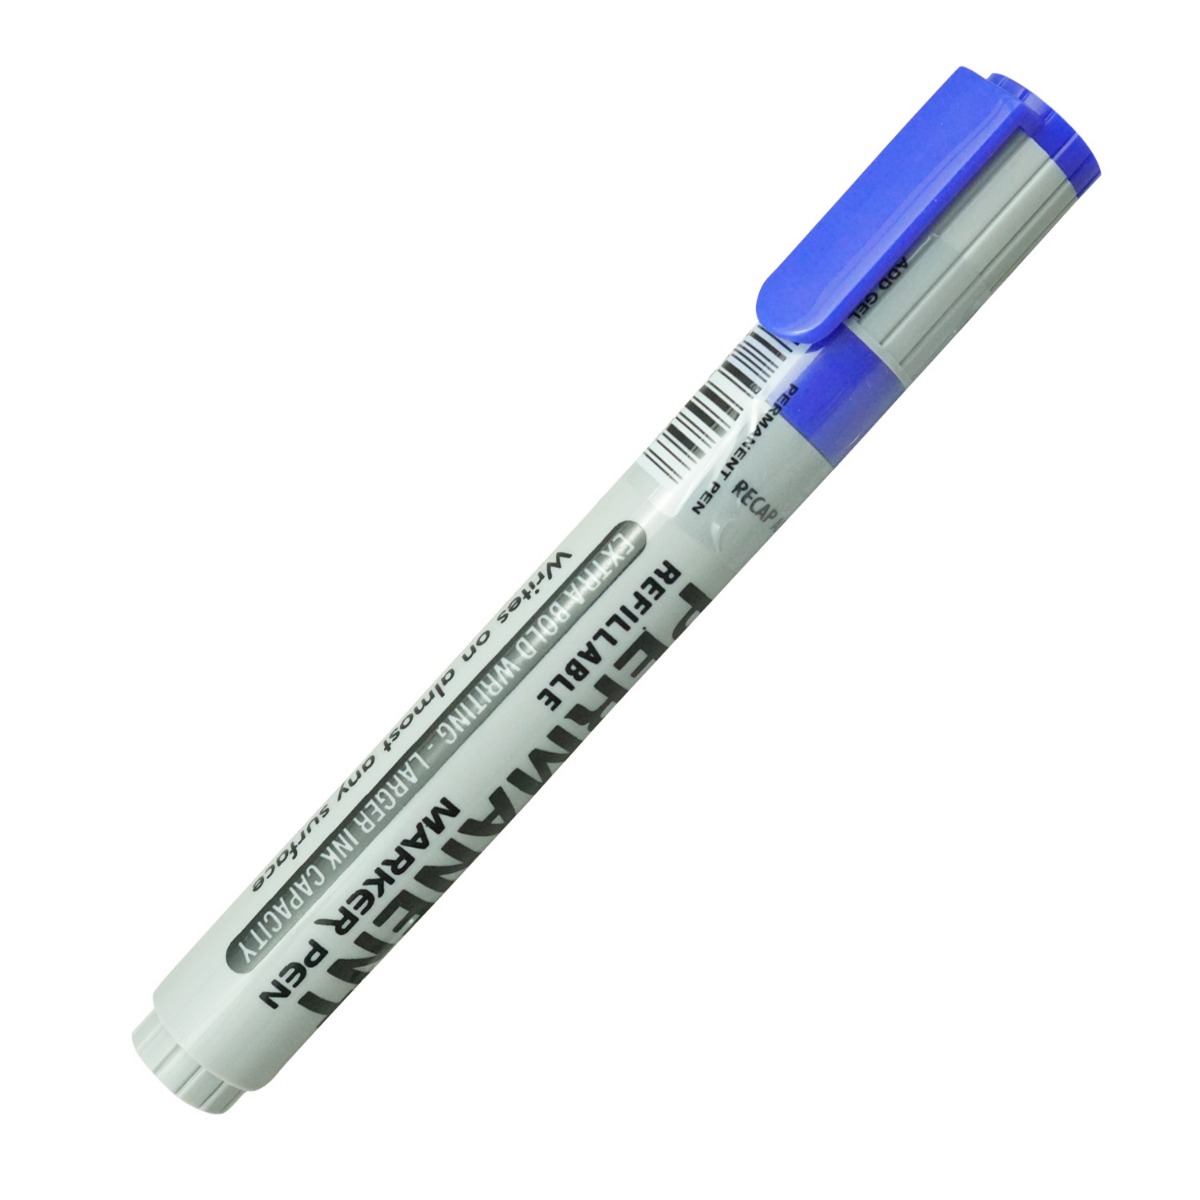 Add  Gel  Super Jumbo Model:16367 Blue Color Permanent Marker 